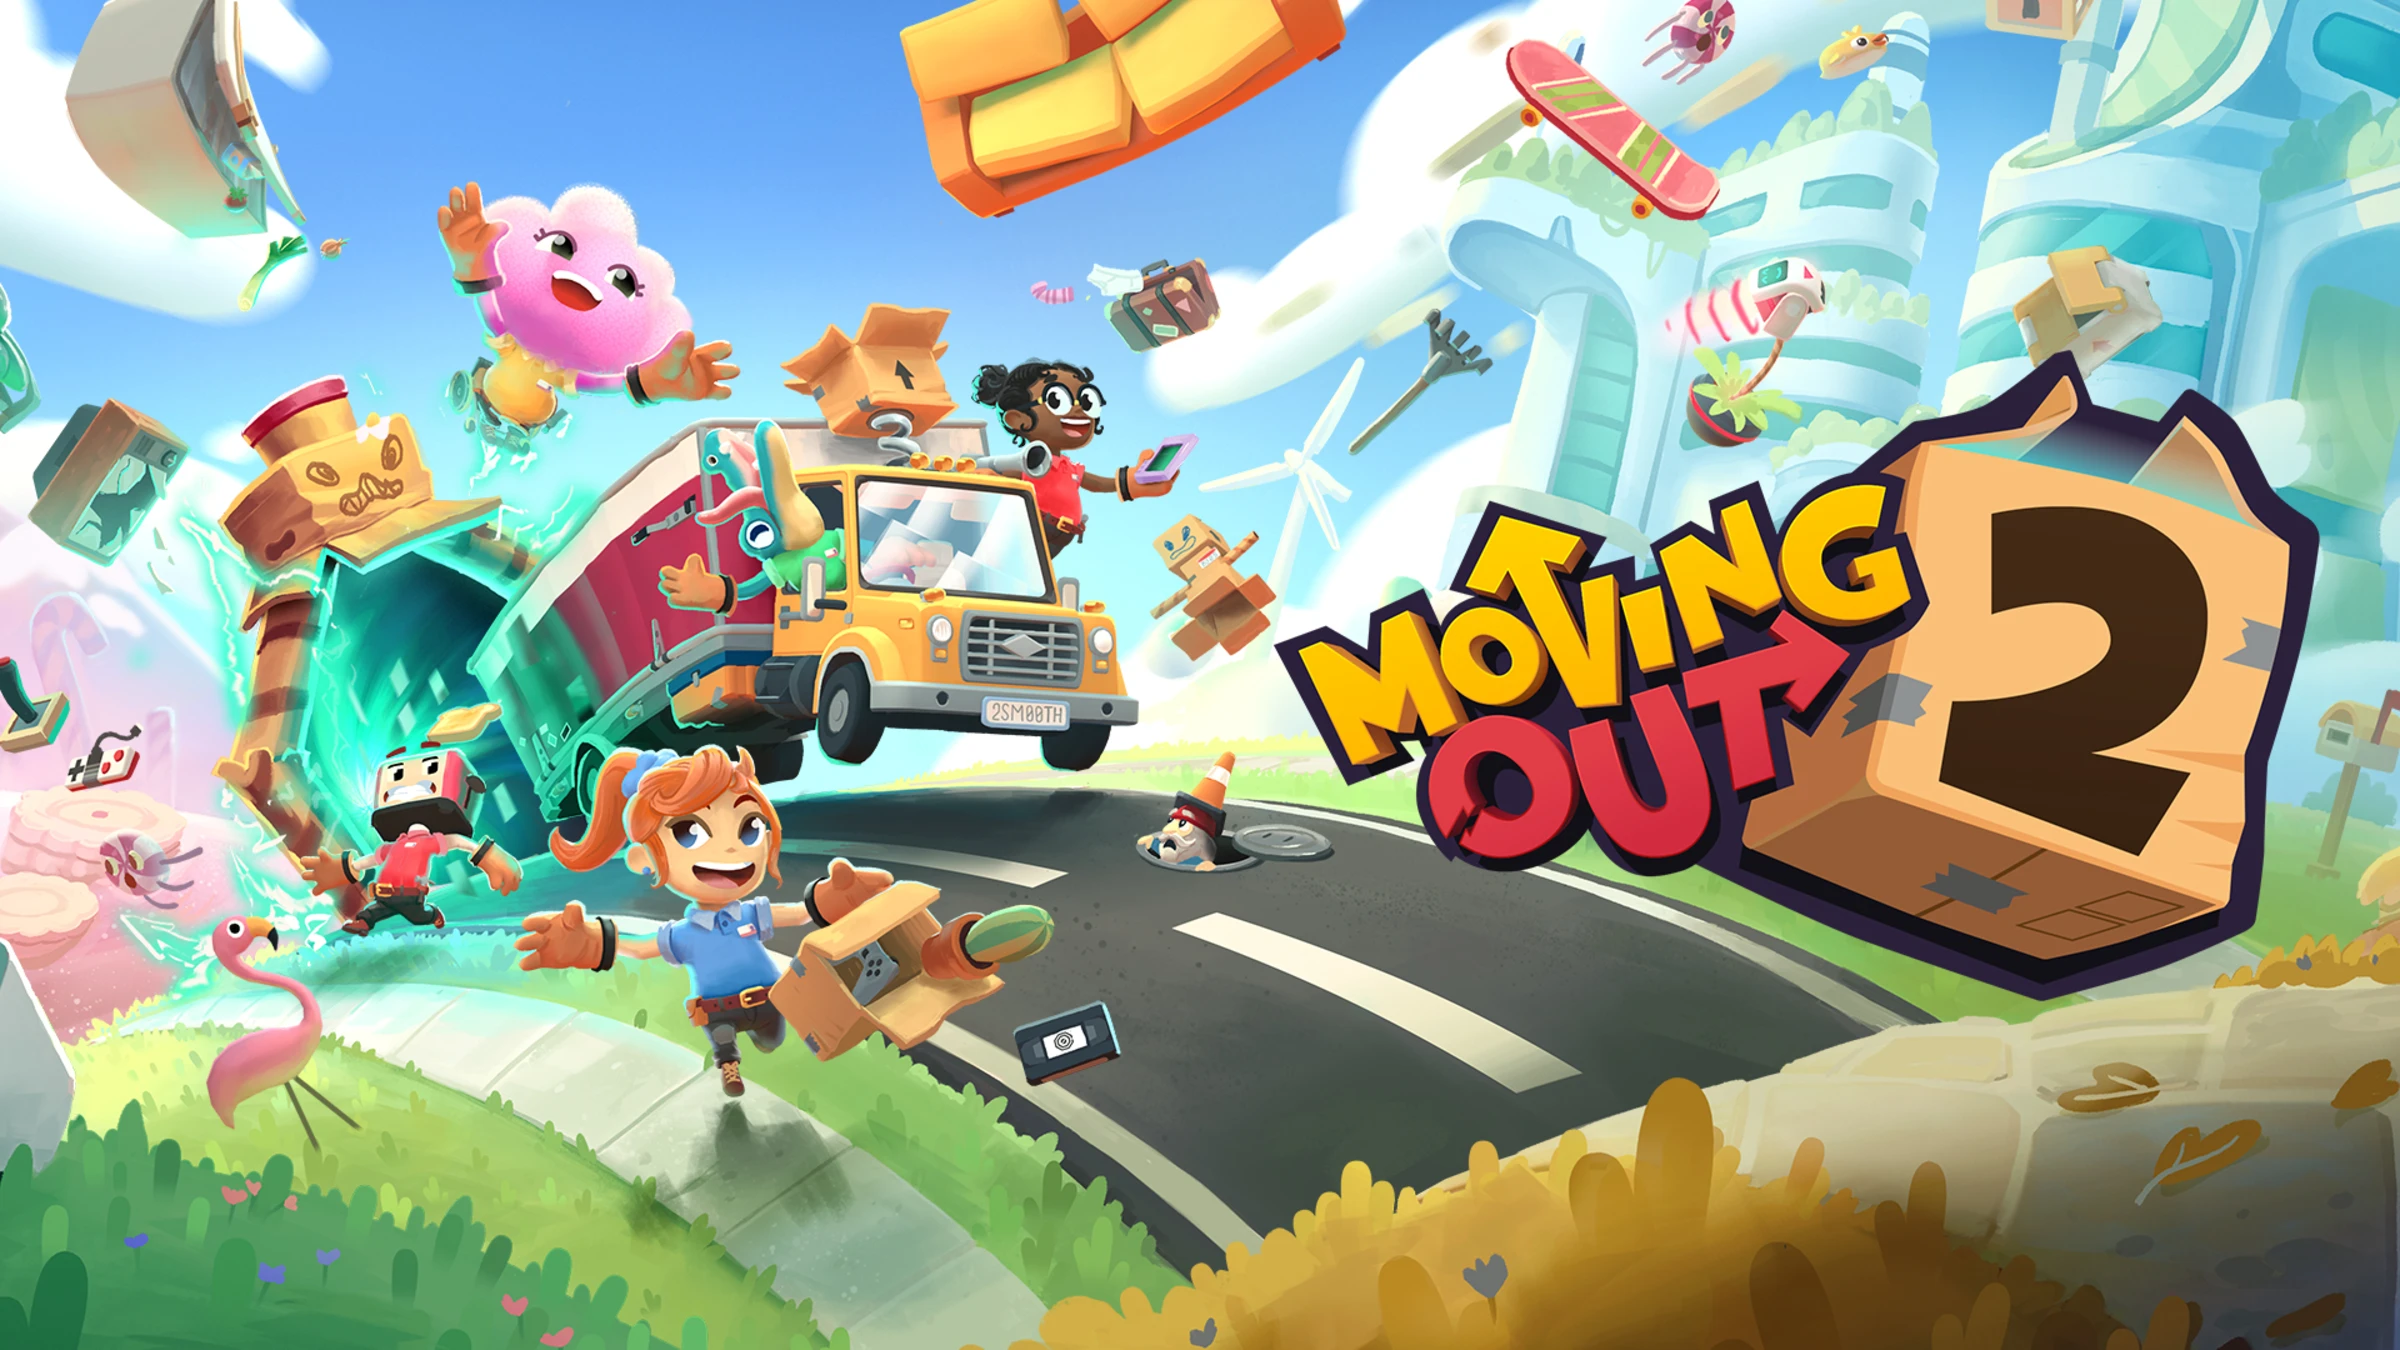 Criando Moving Out 2 para ser mais divertido, diversificado e inclusivo –  PlayStation.Blog BR